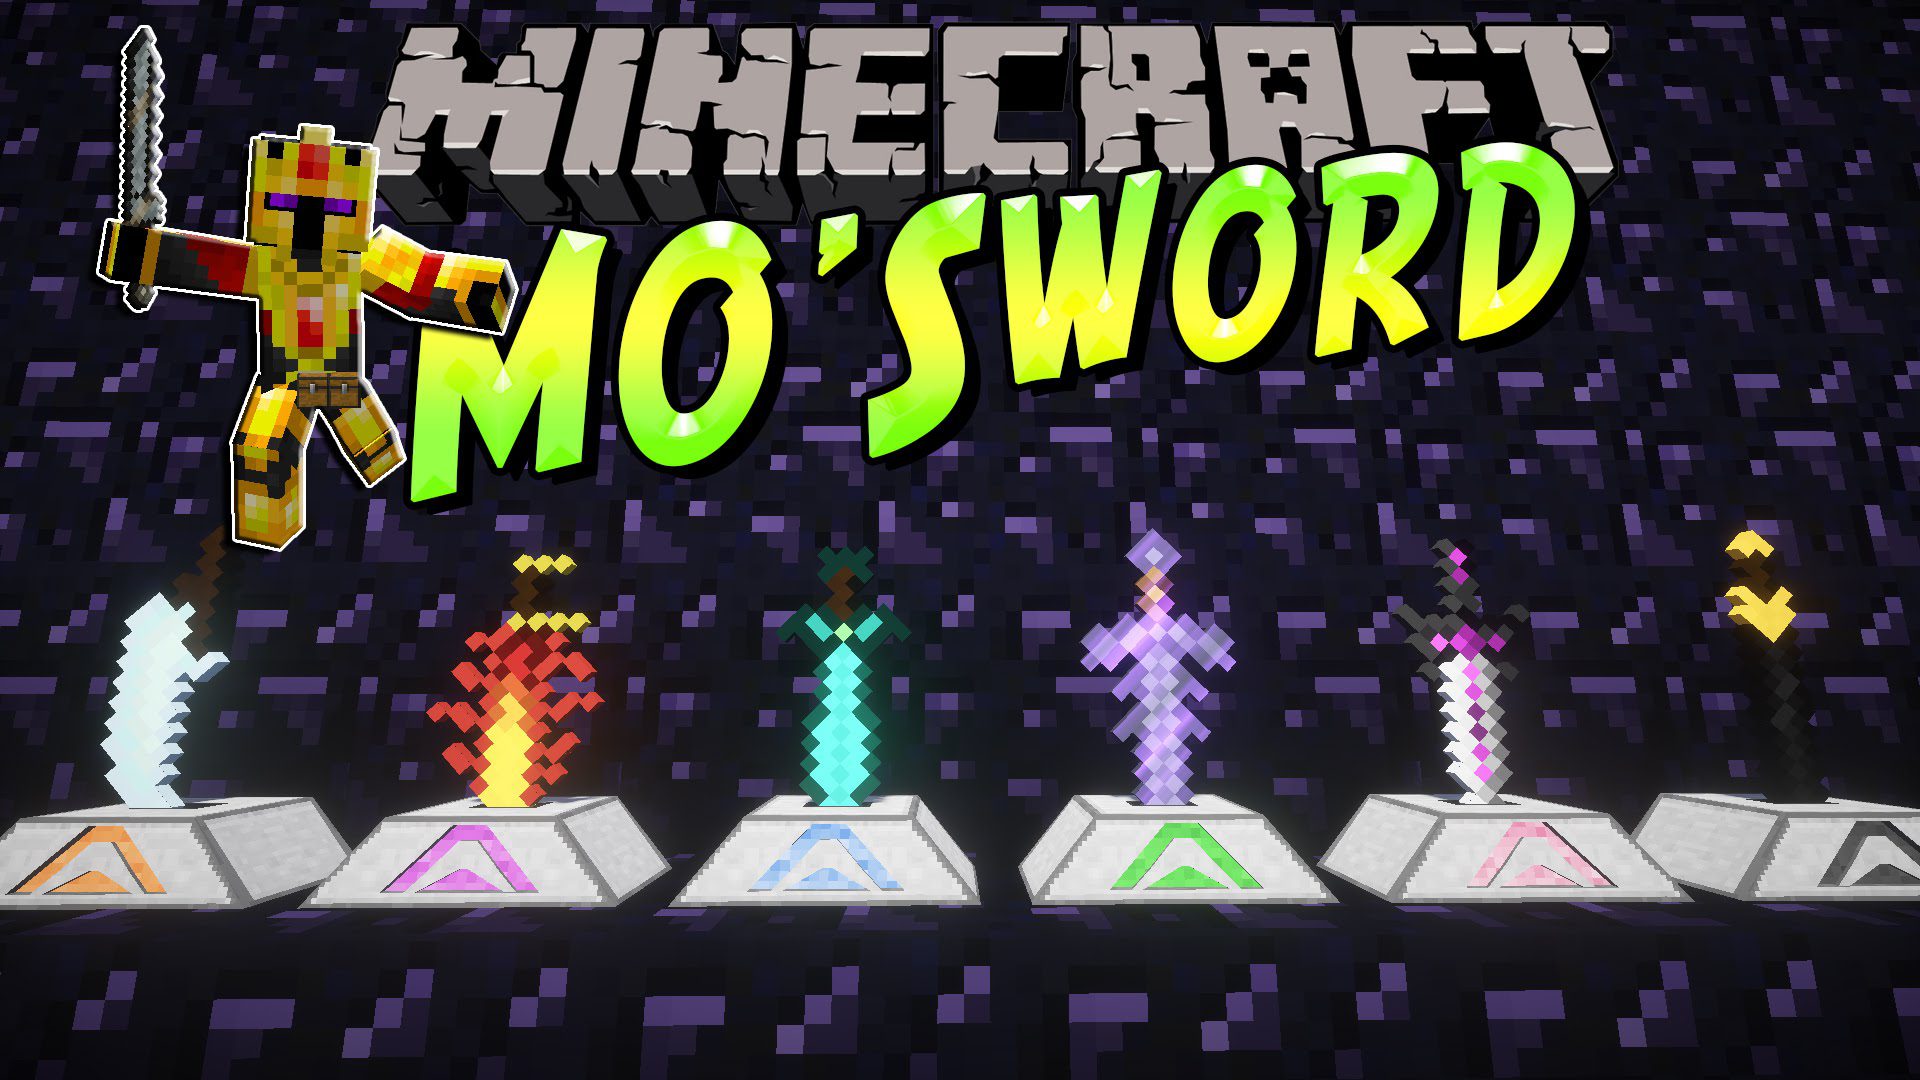 Mo' Swords Mod para Minecraft 1.12.2, 1.8.9 y 1.7.10